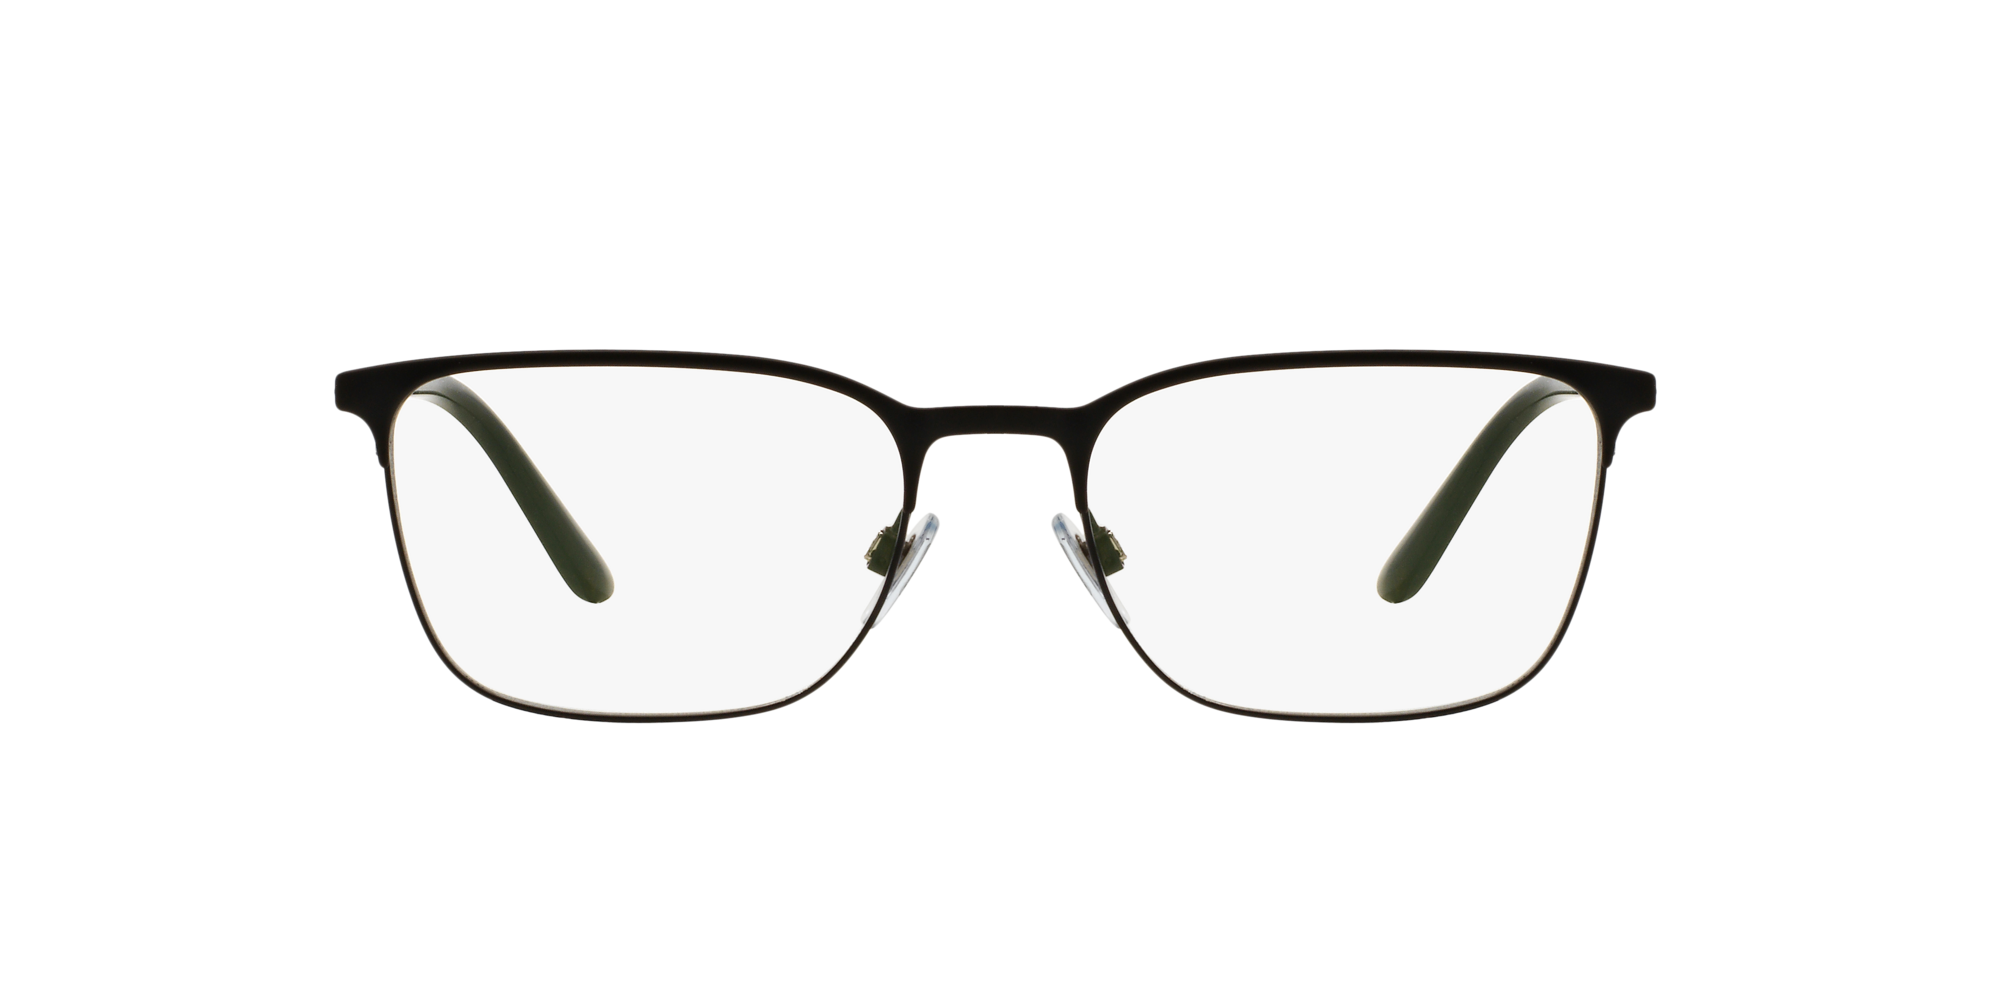 armani prescription sunglasses